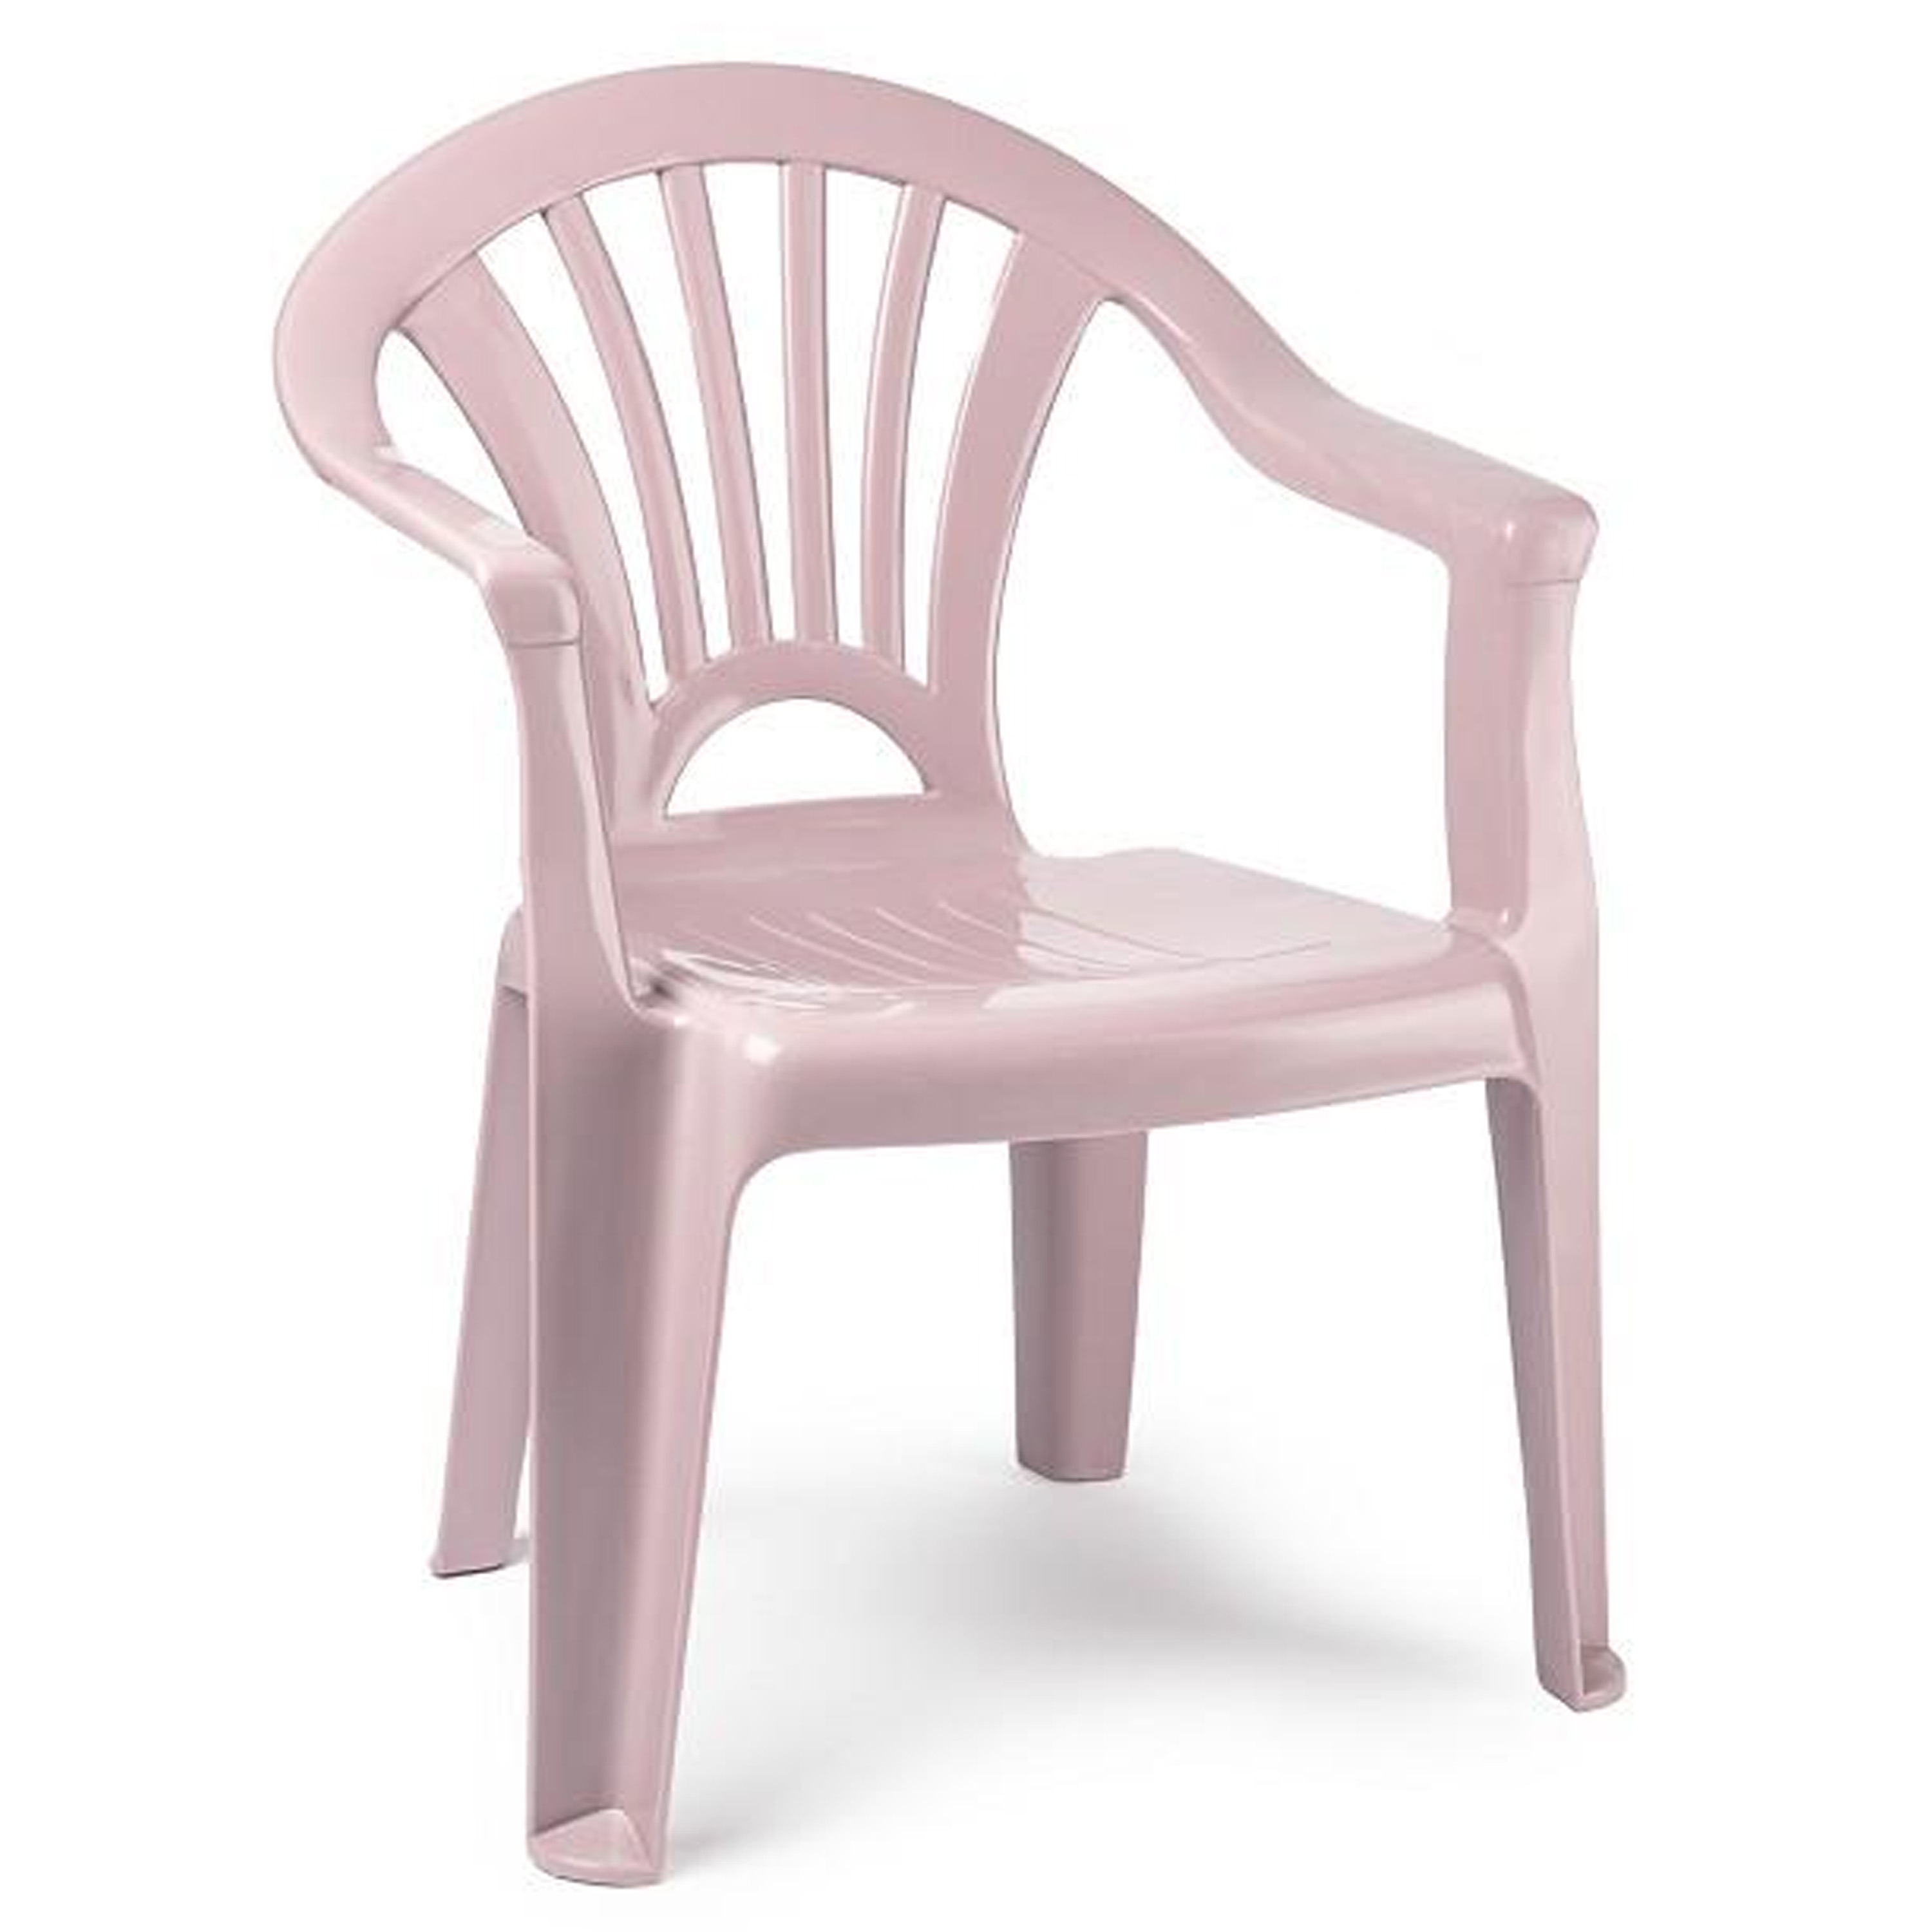 Kinderstoel van kunststof roze 35 x 28 x 50 cm tuin-camping-slaapkamer